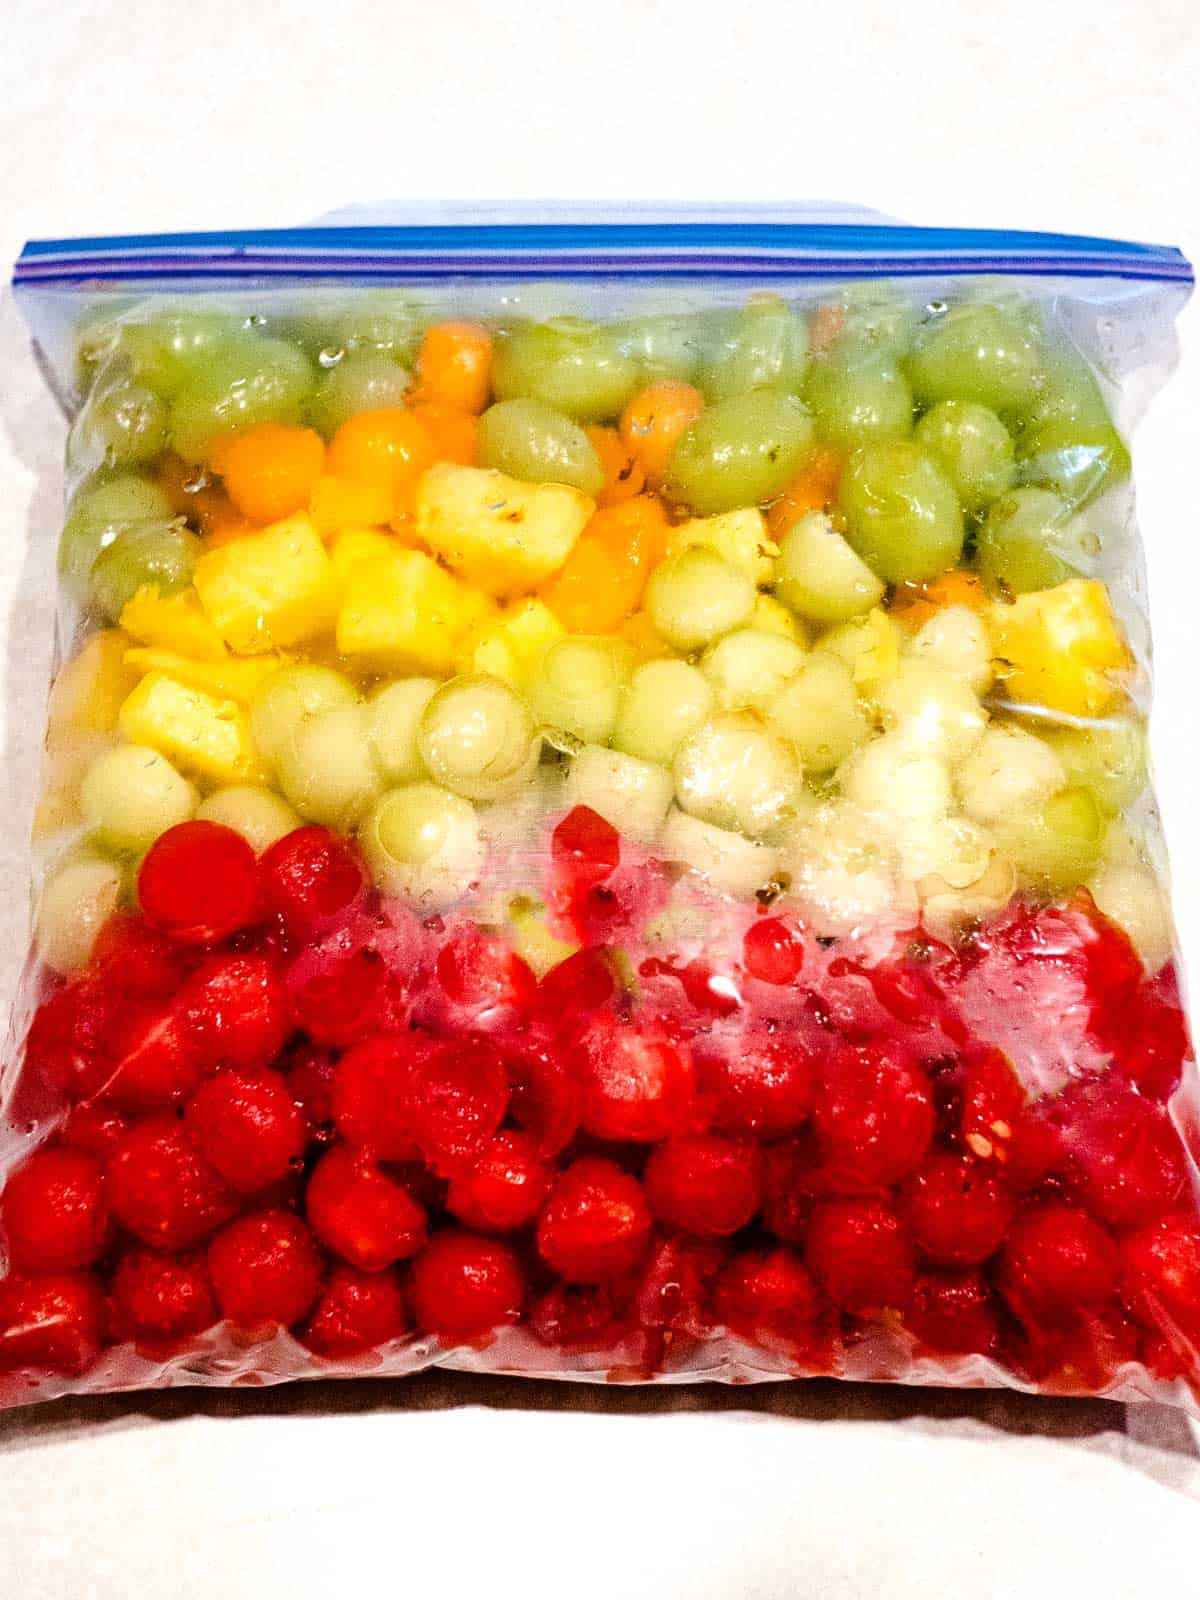 Fruit in Ziploc bag.